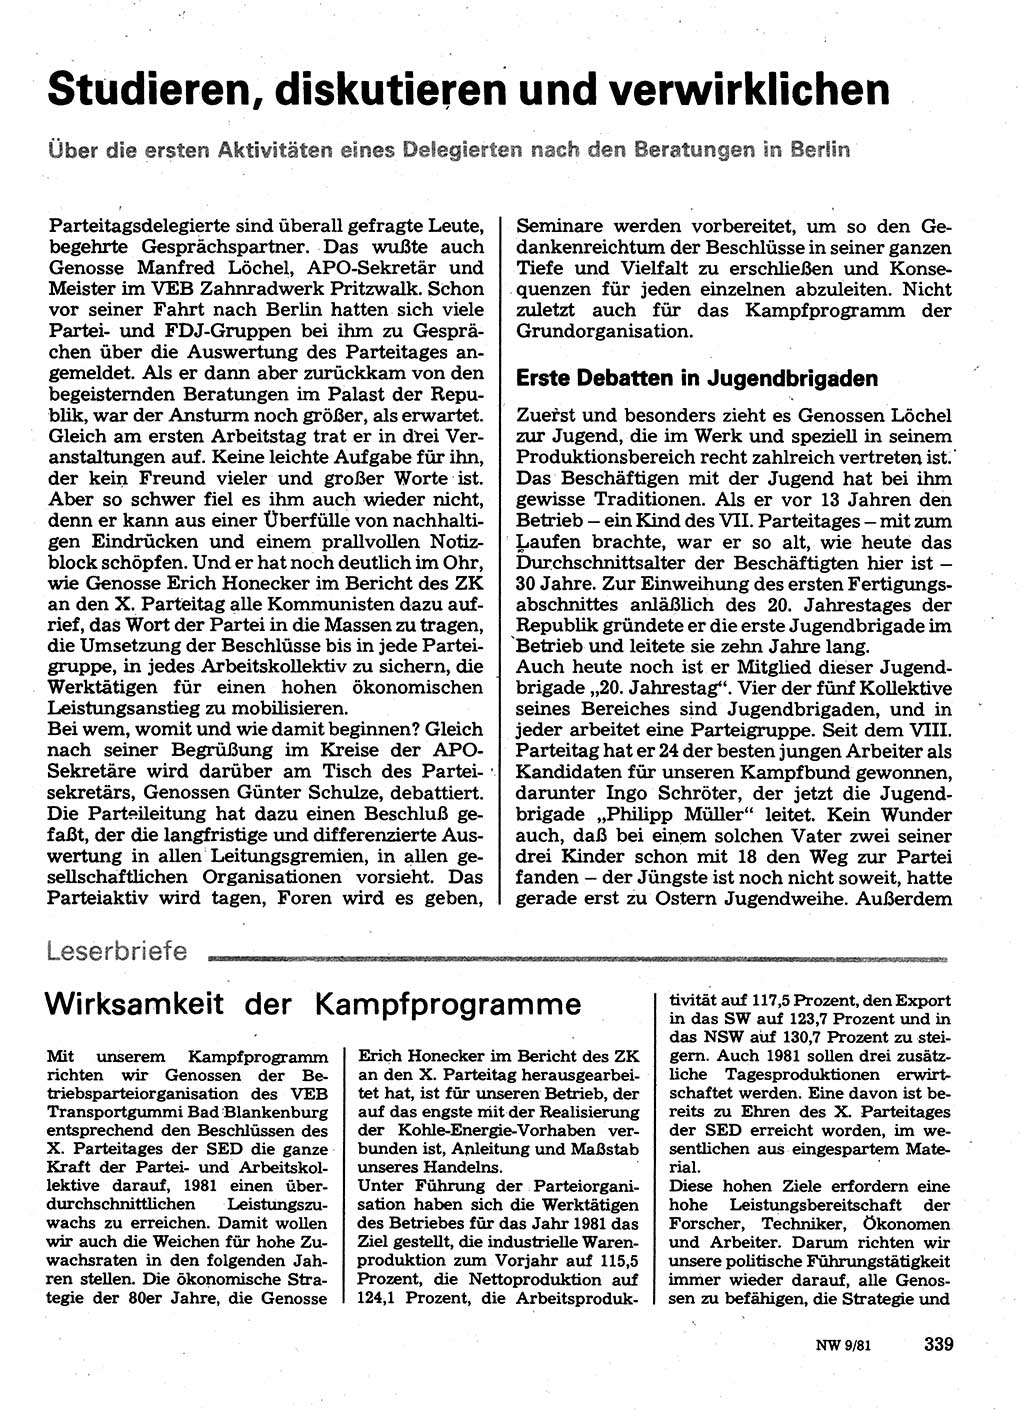 Neuer Weg (NW), Organ des Zentralkomitees (ZK) der SED (Sozialistische Einheitspartei Deutschlands) für Fragen des Parteilebens, 36. Jahrgang [Deutsche Demokratische Republik (DDR)] 1981, Seite 339 (NW ZK SED DDR 1981, S. 339)